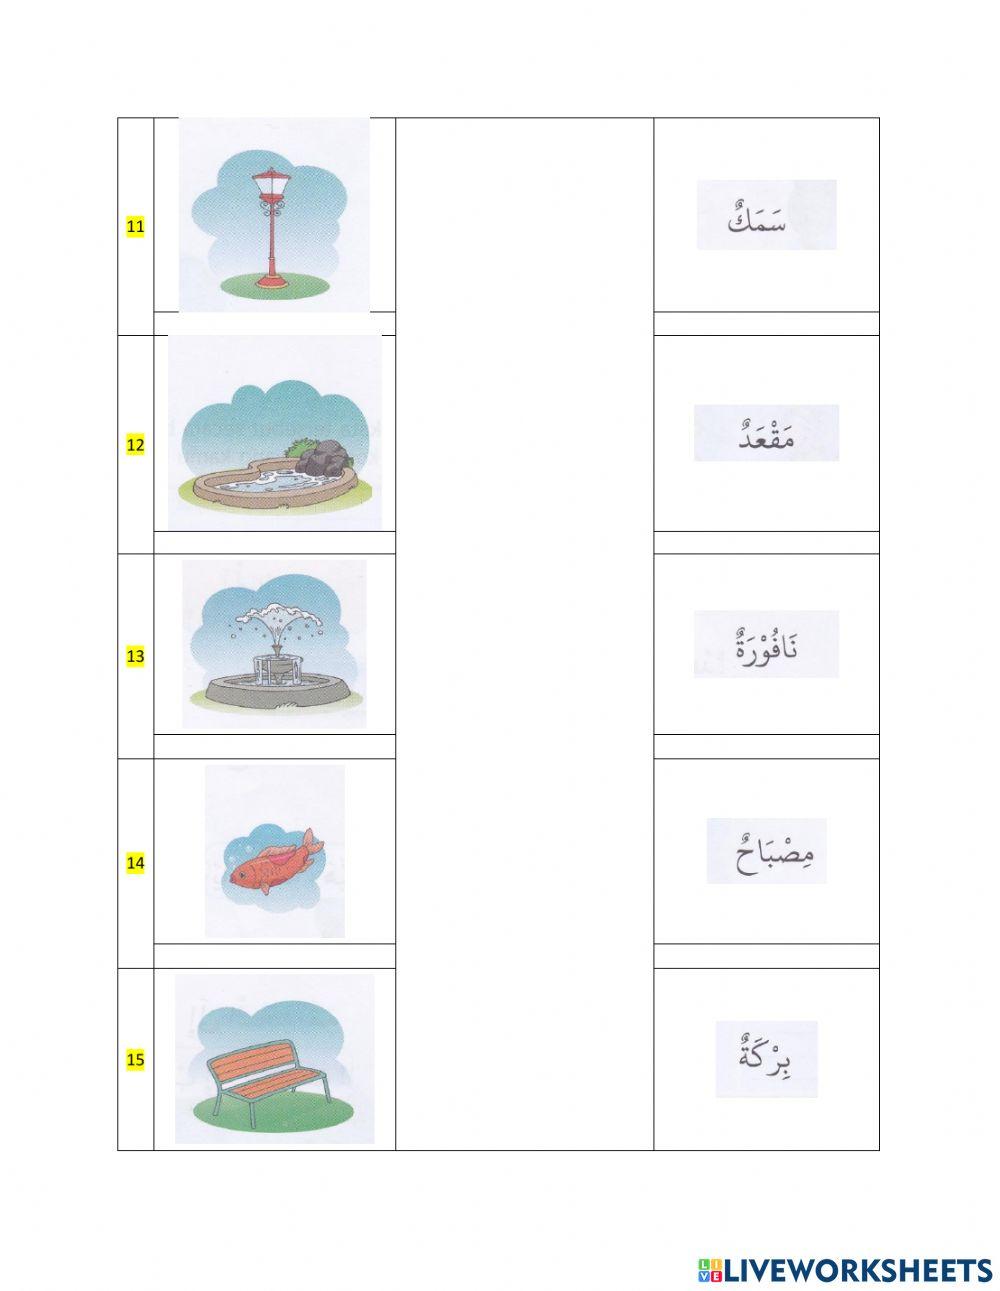 PAS Bahasa Arab kelas 3